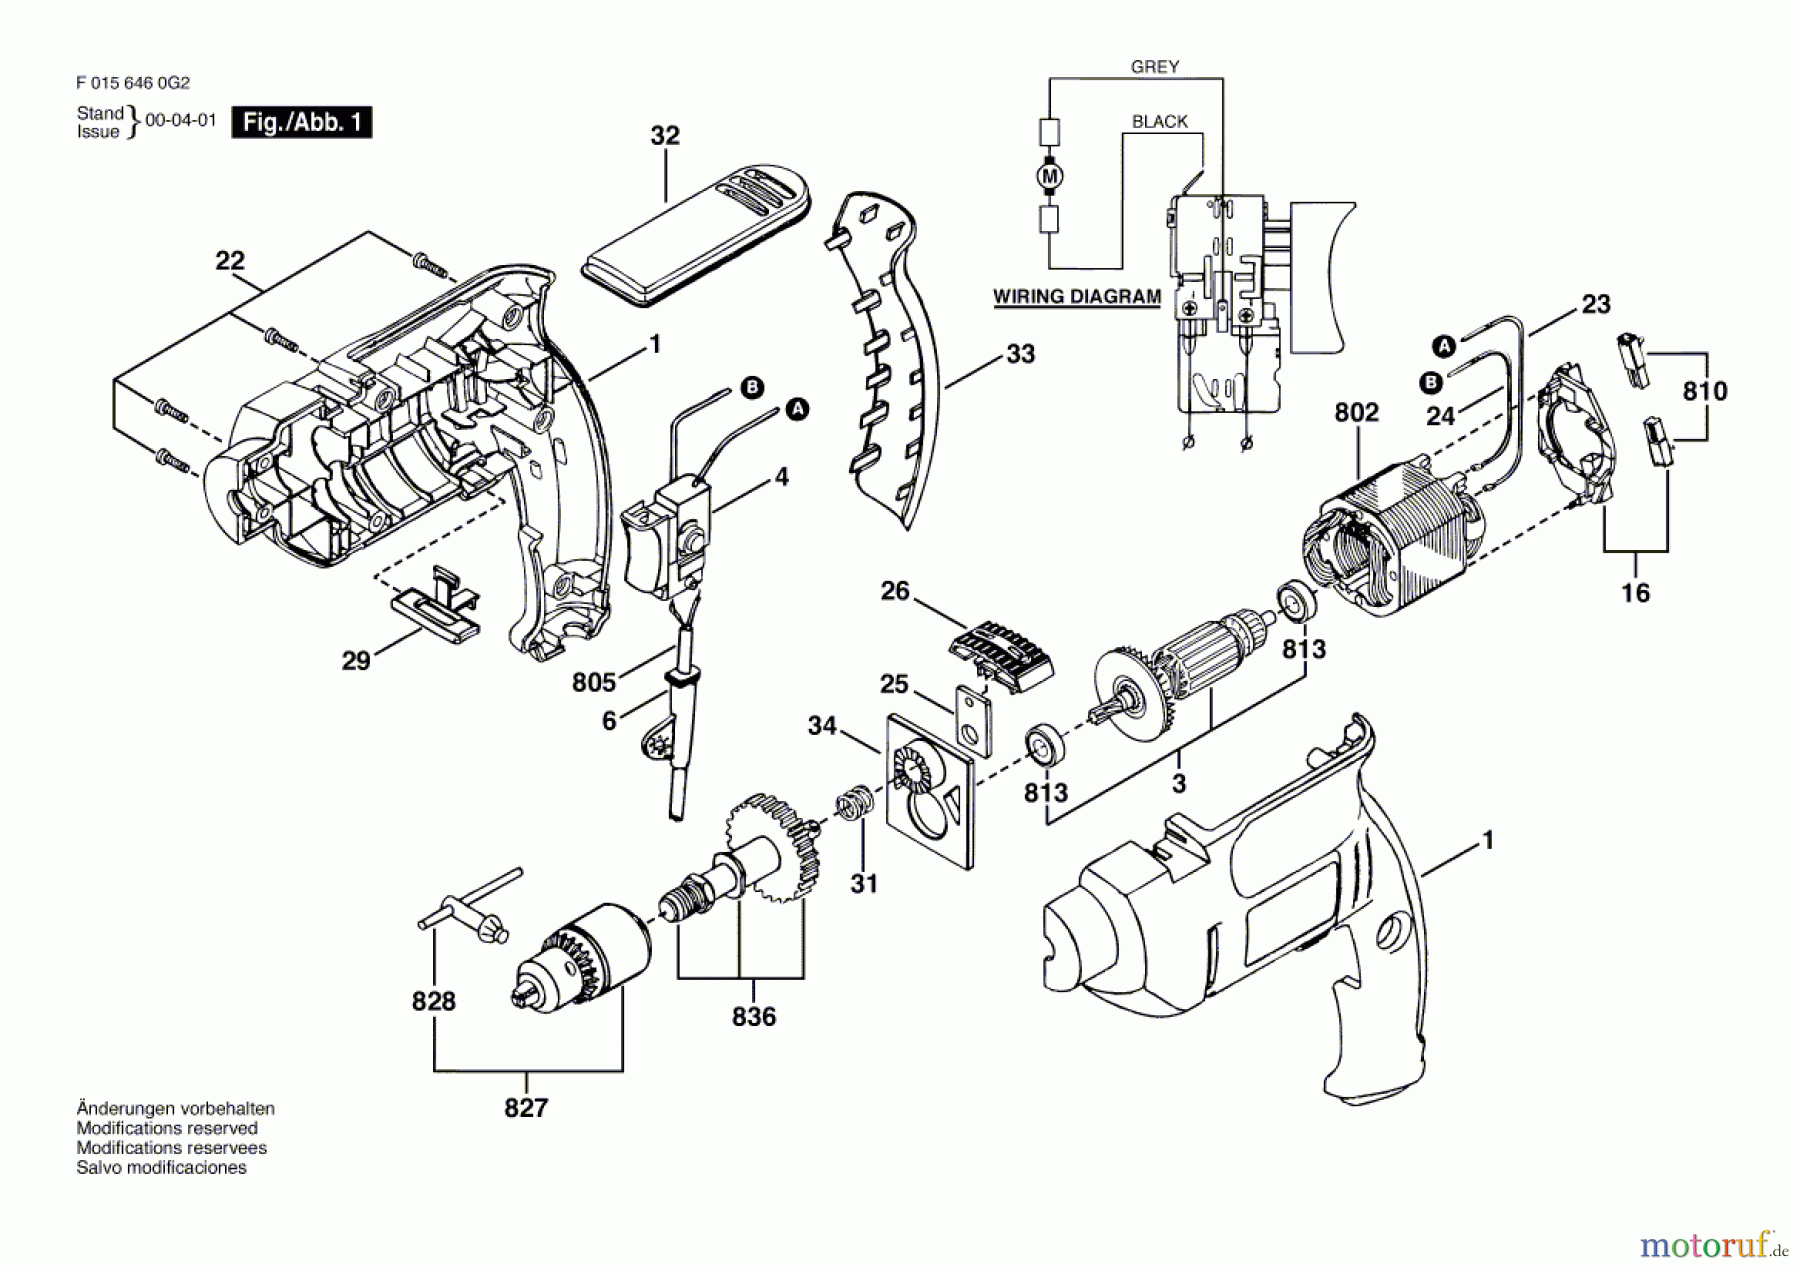  Bosch Werkzeug Ratsche 6460 Seite 1